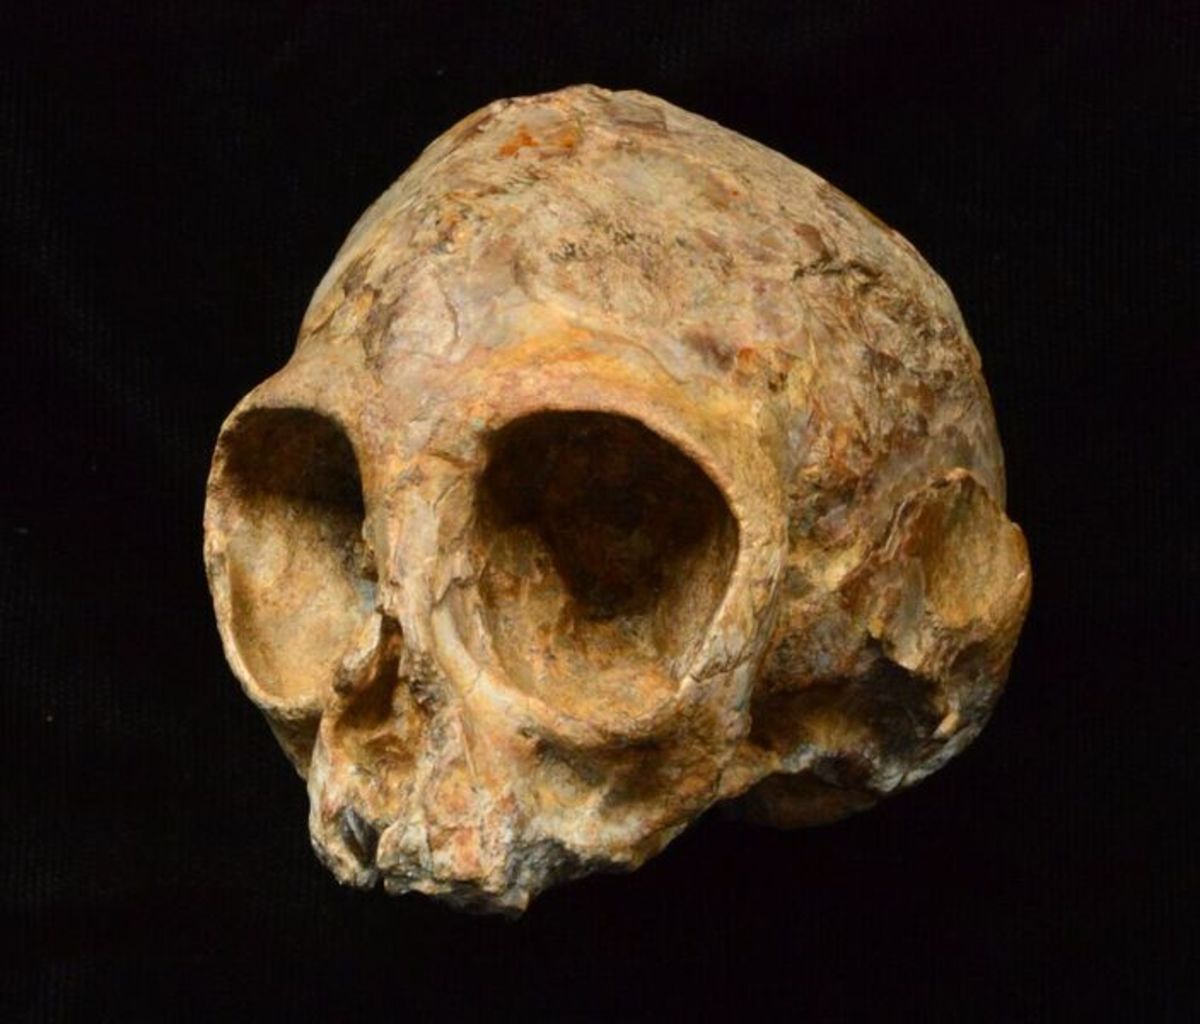 Σπουδαία ανακάλυψη! Βρέθηκε κοινός πρόγονος ανθρώπων και πιθήκων ηλικίας 13 εκατομμυρίων ετών!